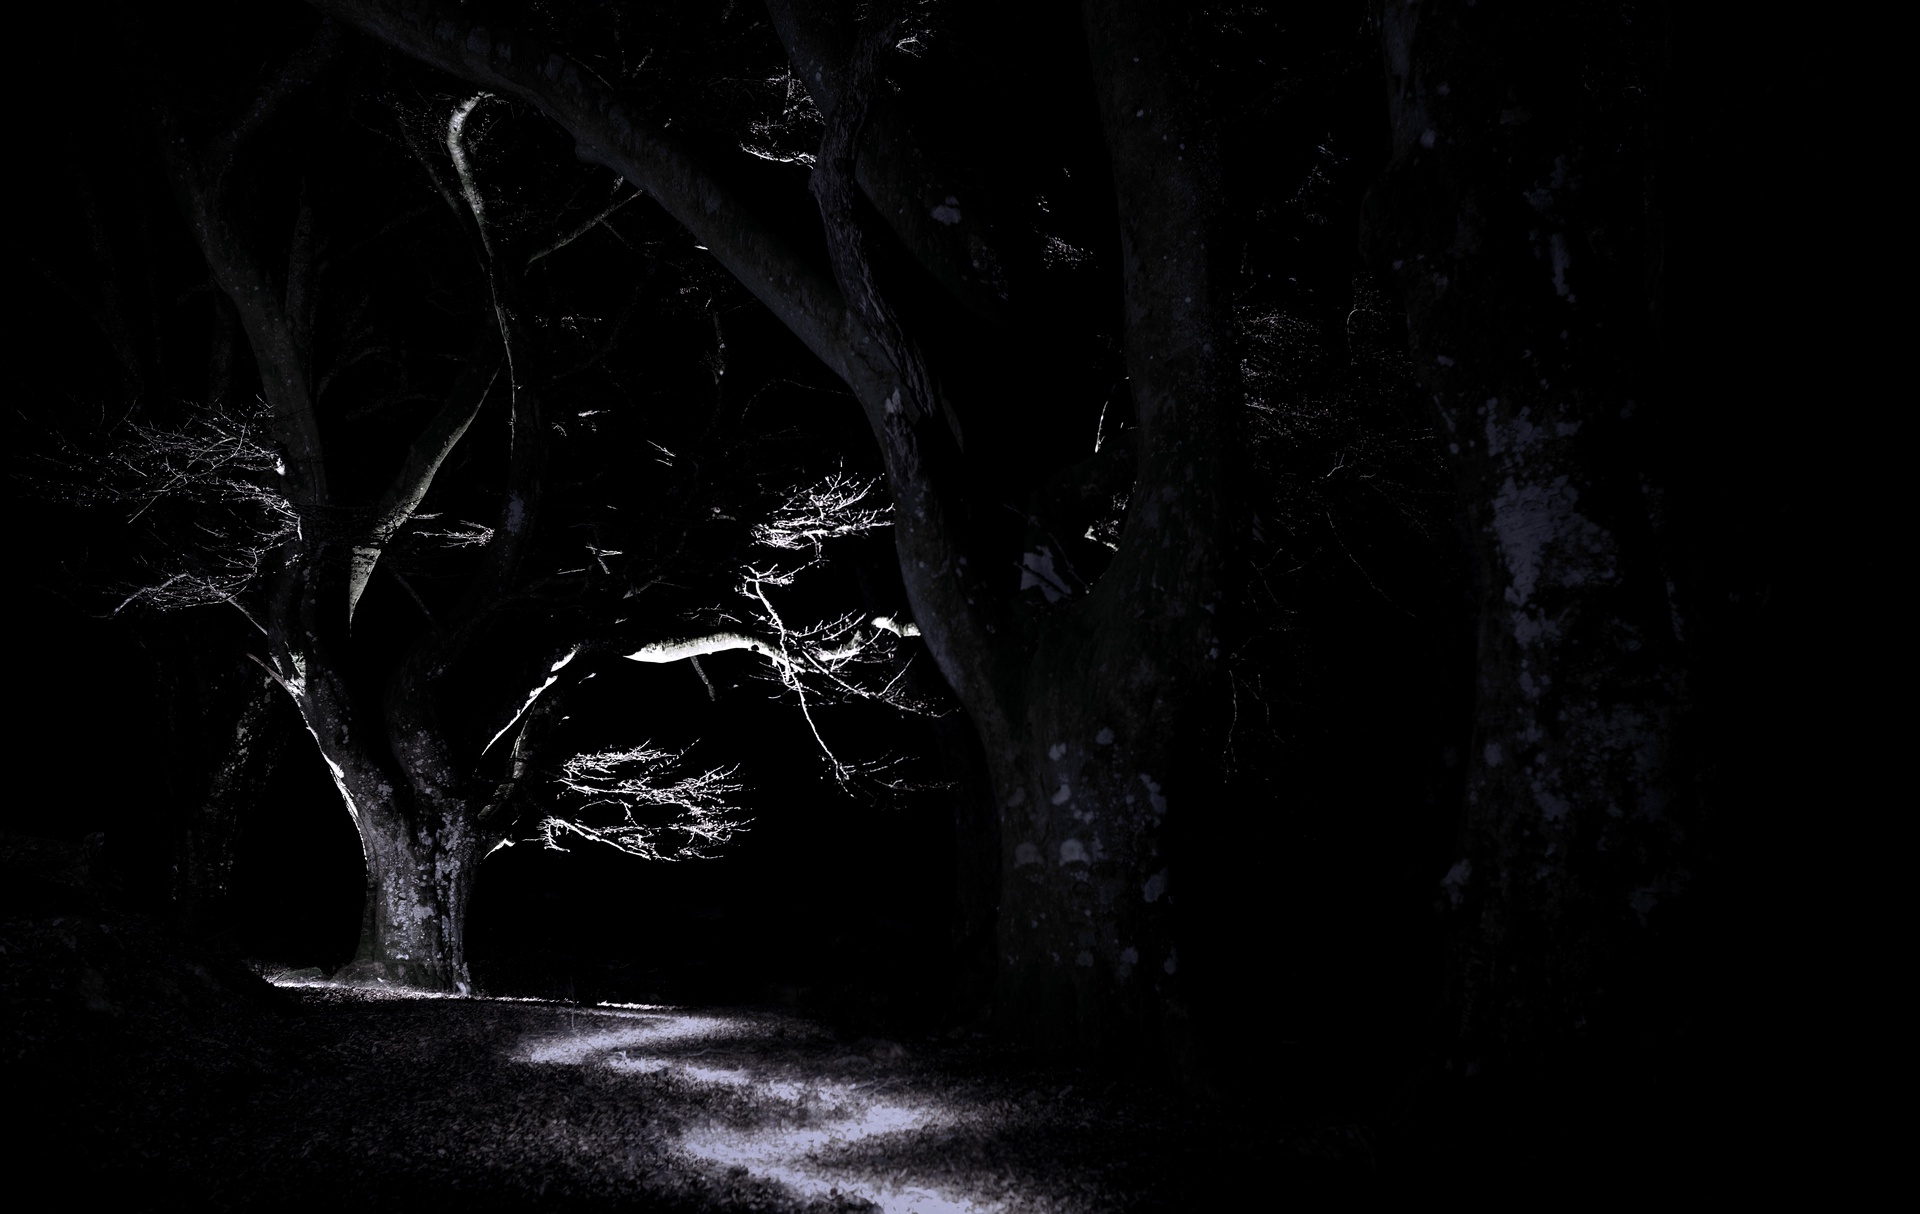 Display image: Spooky Beech Tree, Glen Lyon